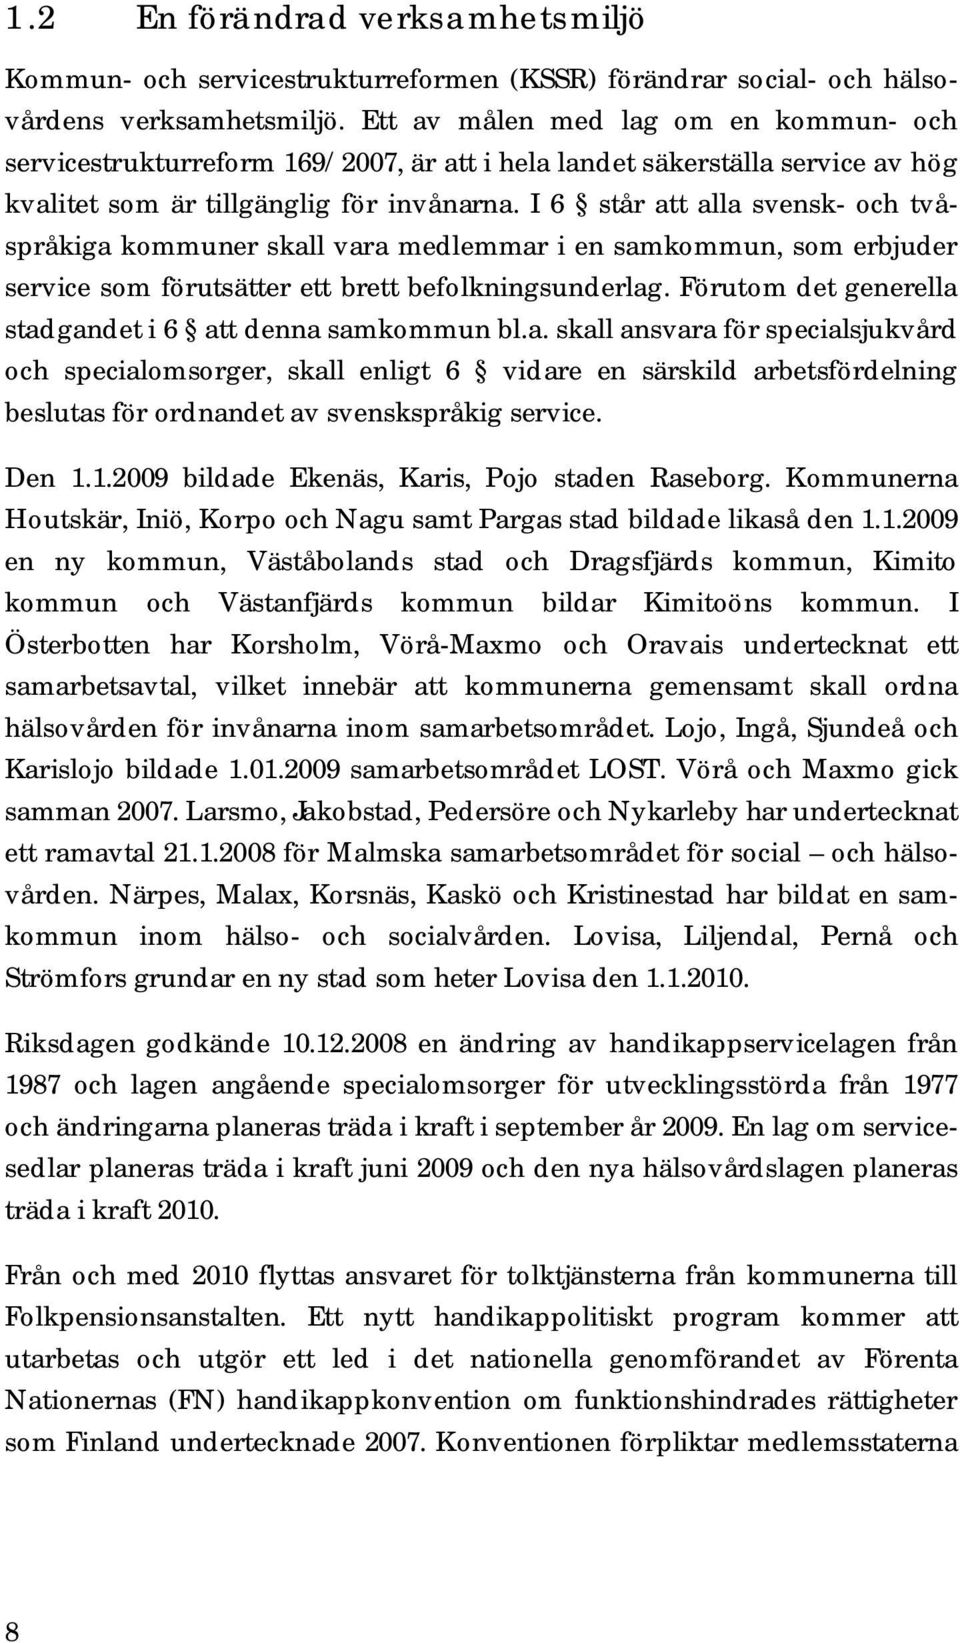 I 6 står att alla svensk- och tvåspråkiga kommuner skall vara medlemmar i en samkommun, som erbjuder service som förutsätter ett brett befolkningsunderlag.